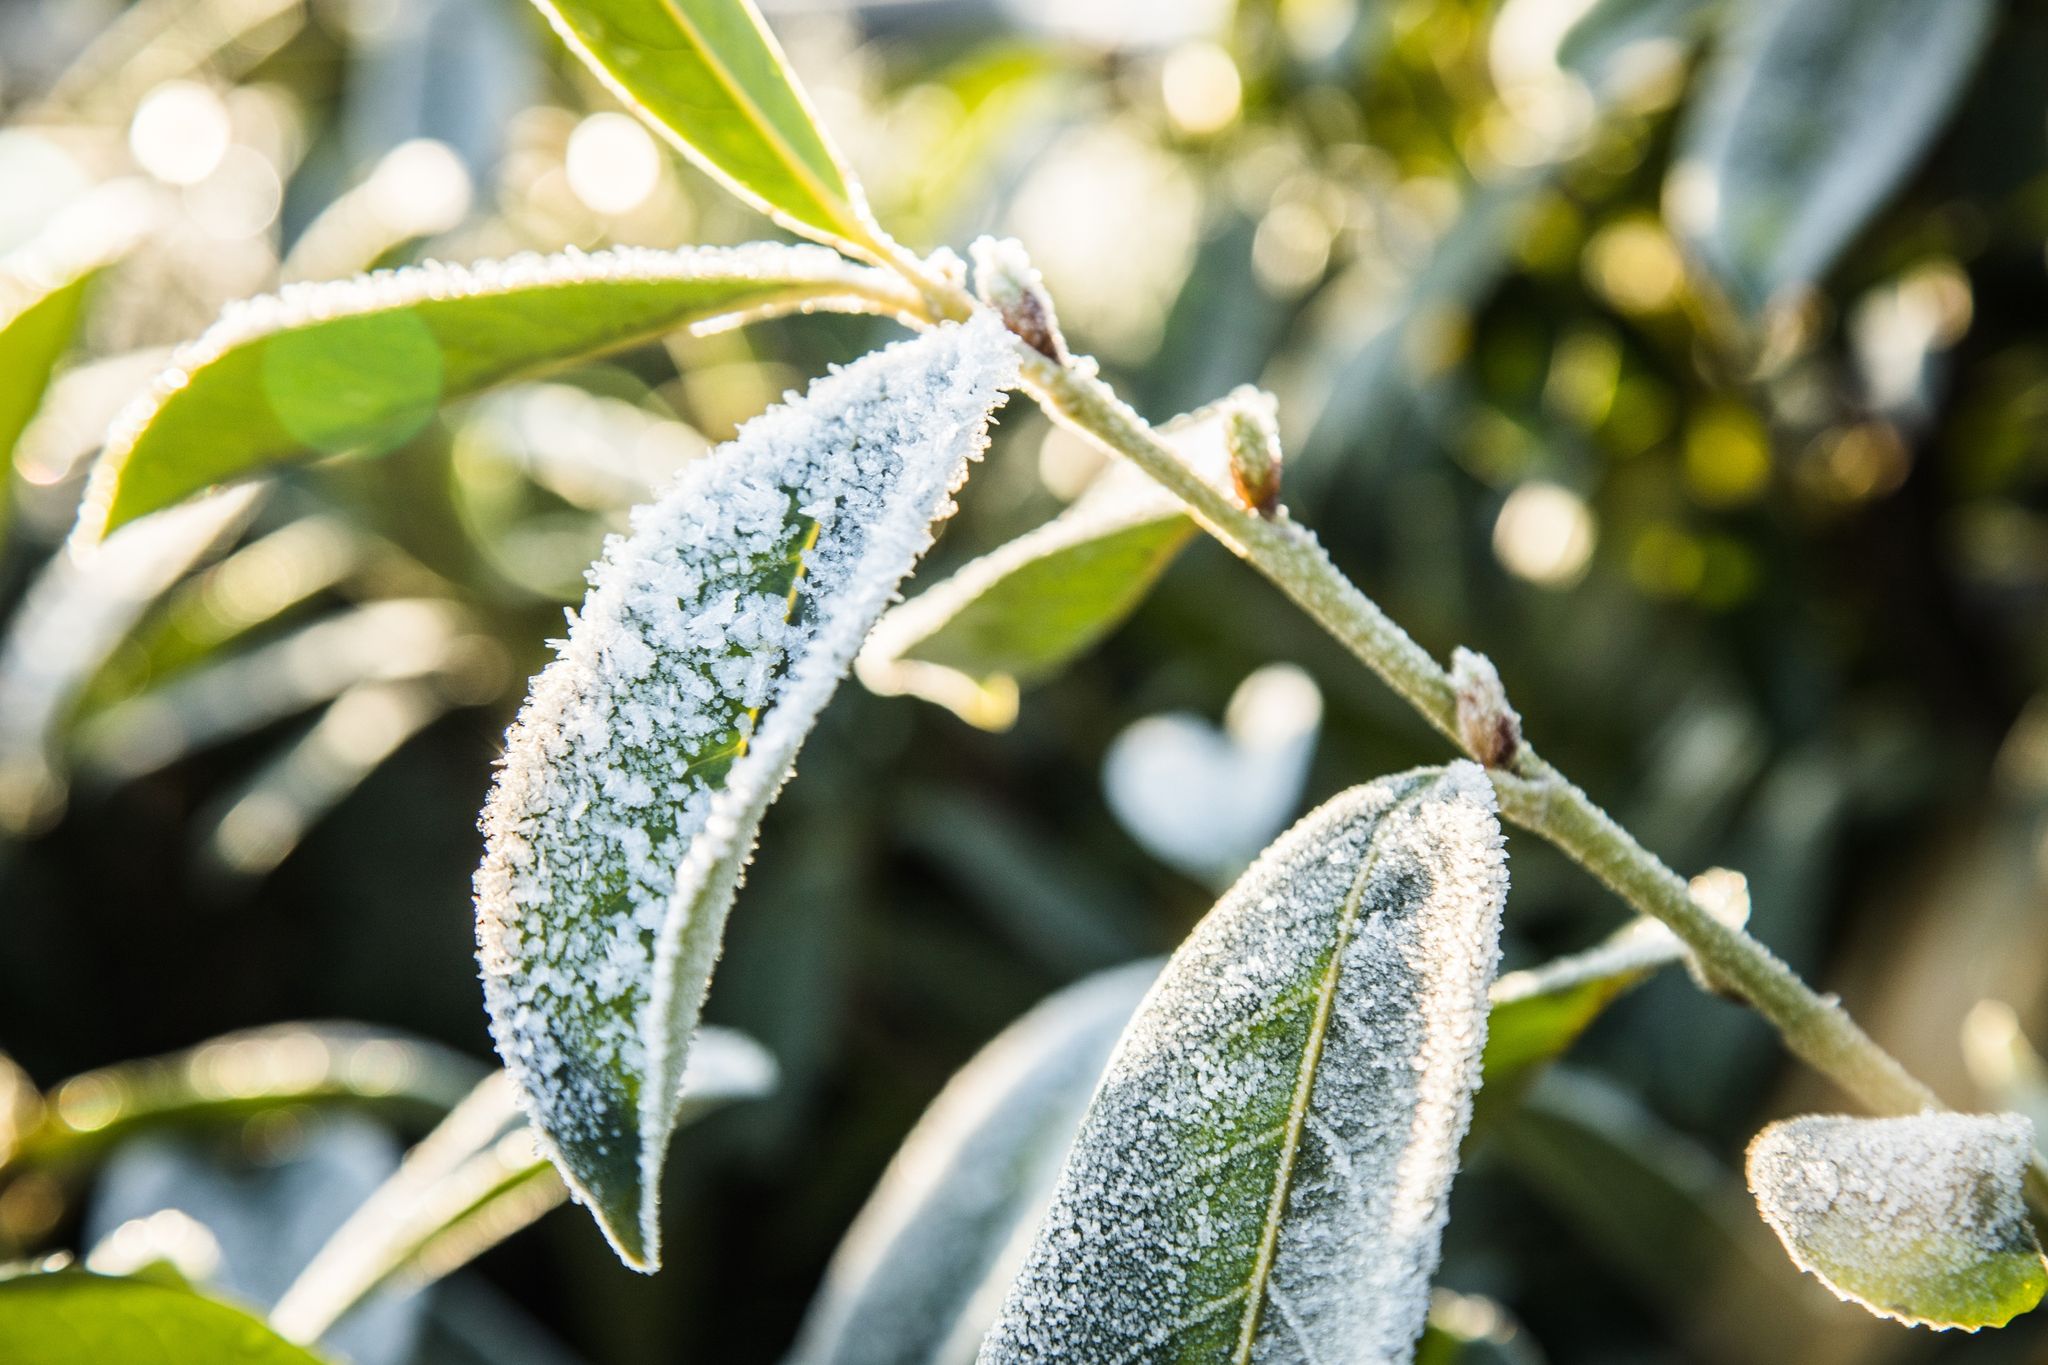 Erfrieren bei Frost und Kälte? Nein, daran liegt es meist nicht, wenn Immergrüne nach dem Winter eingehen.